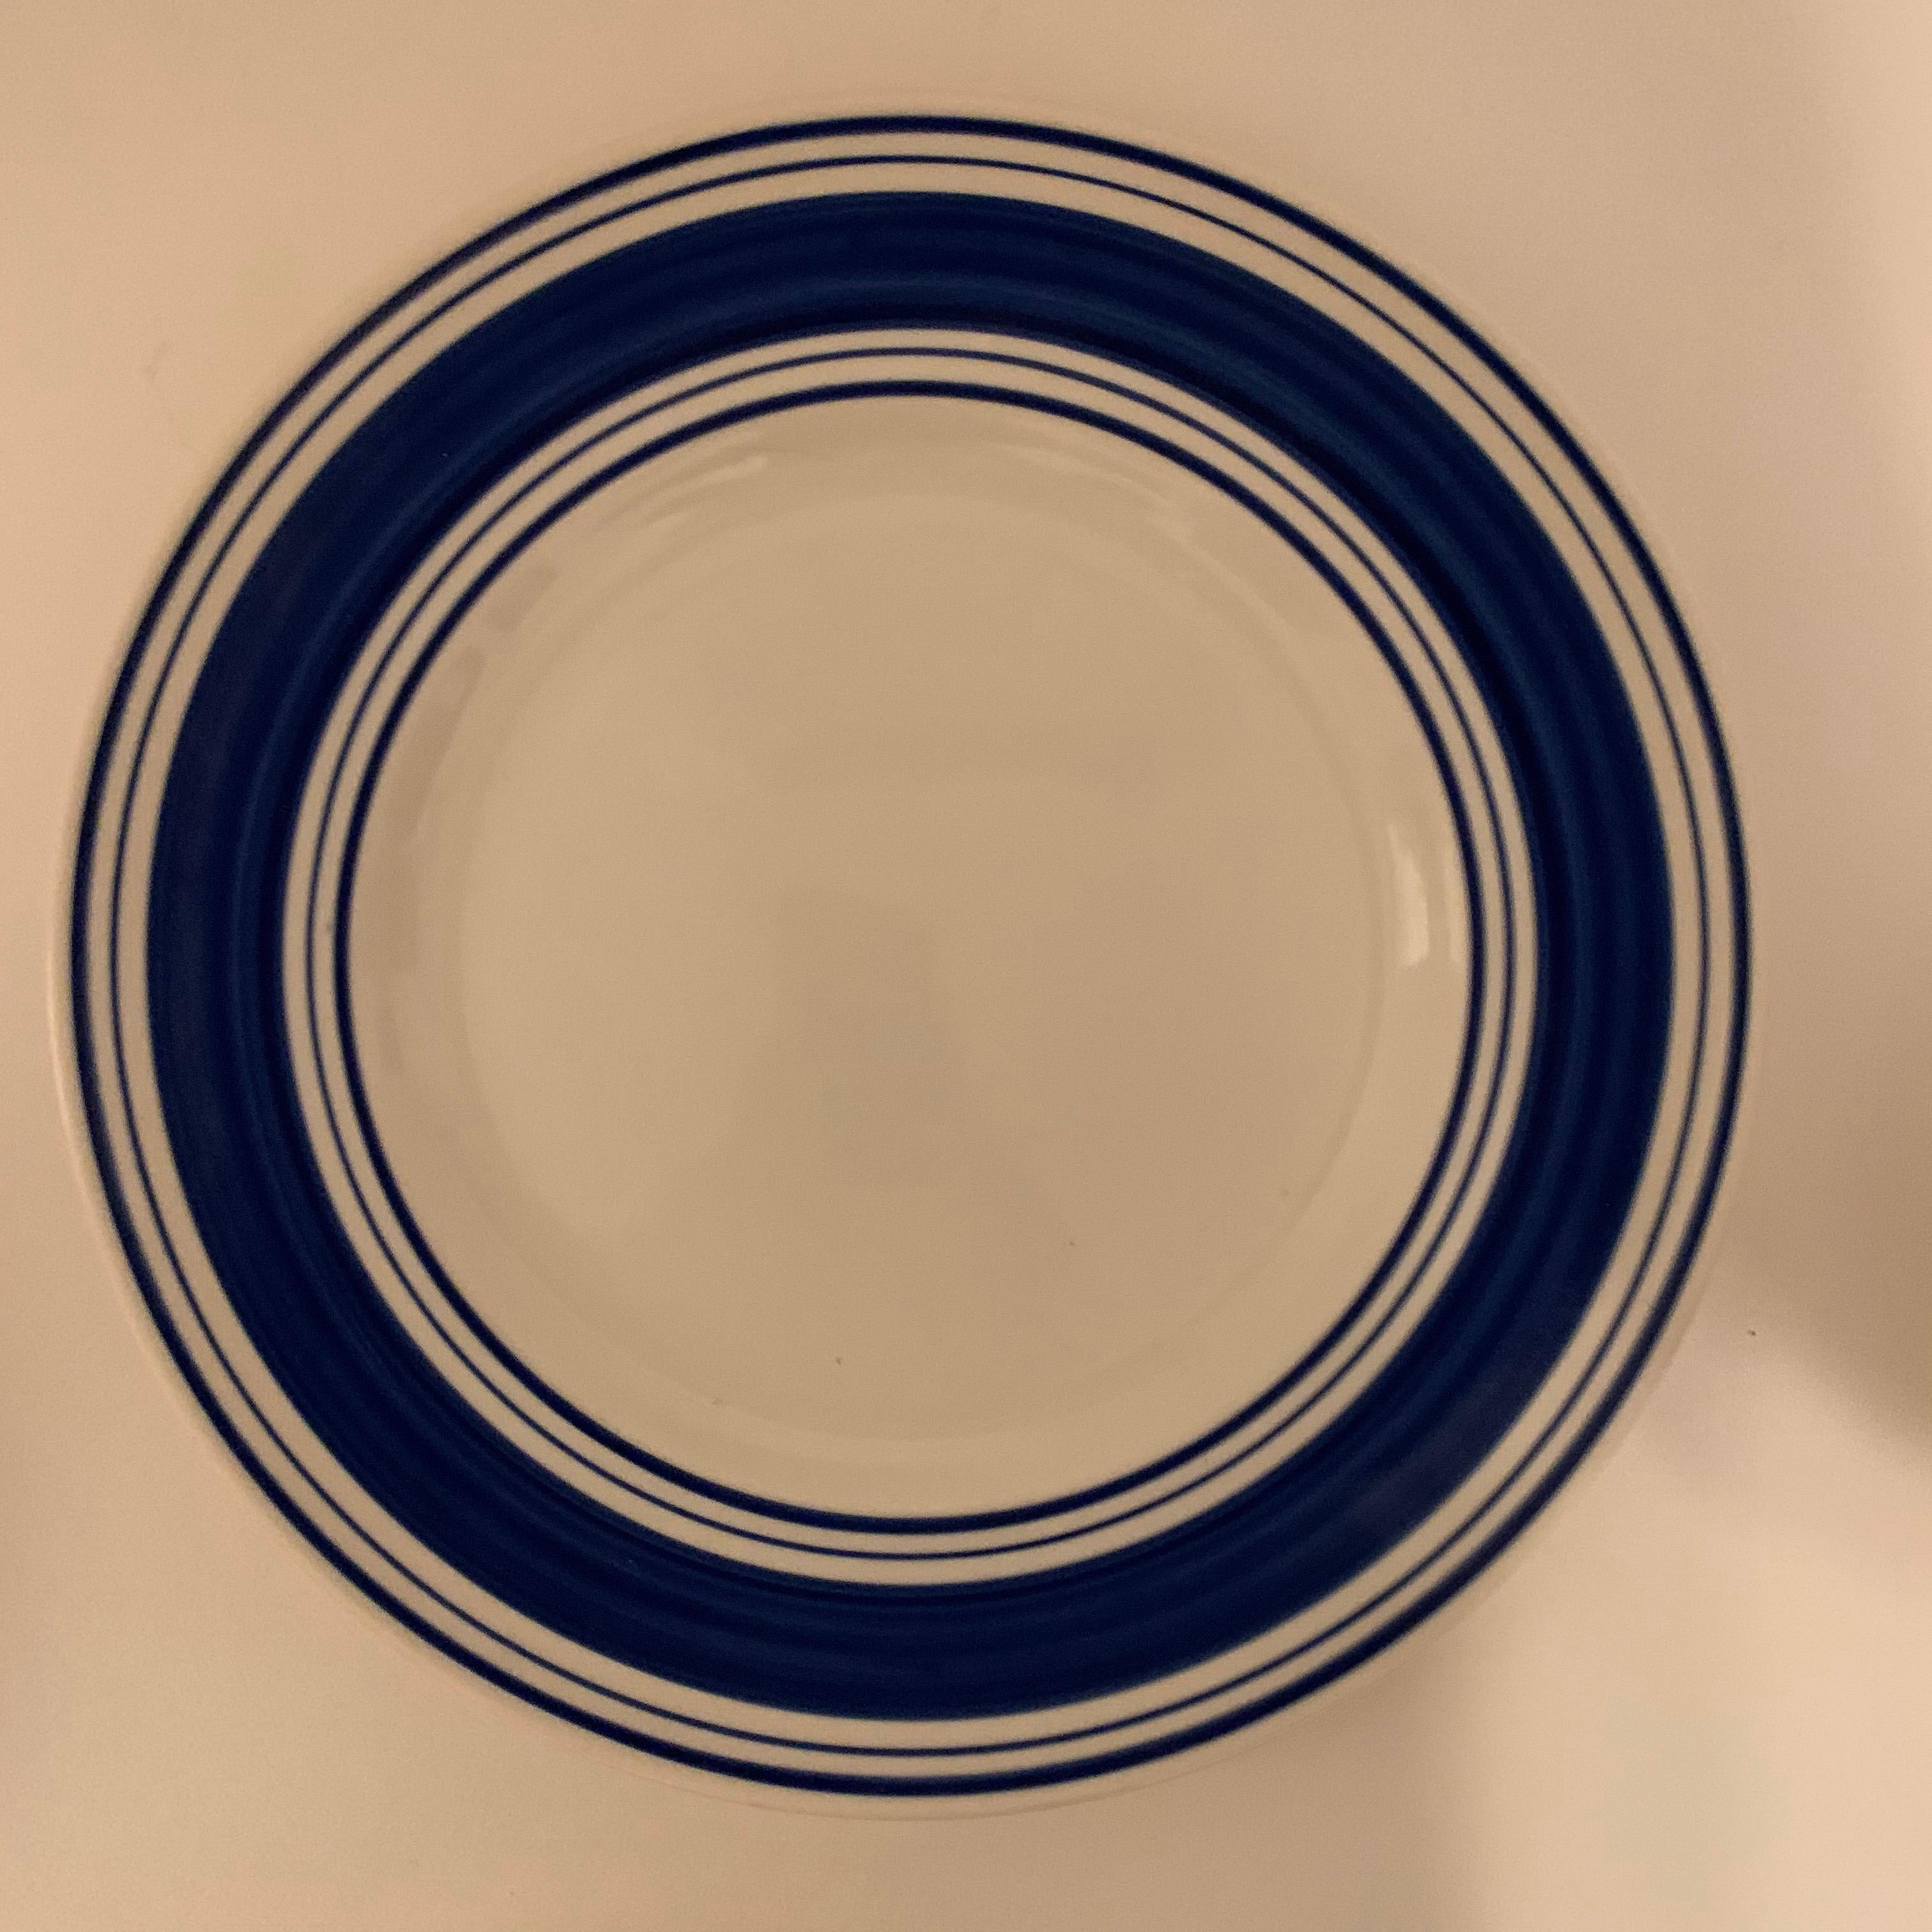 ralph lauren dinnerware sets